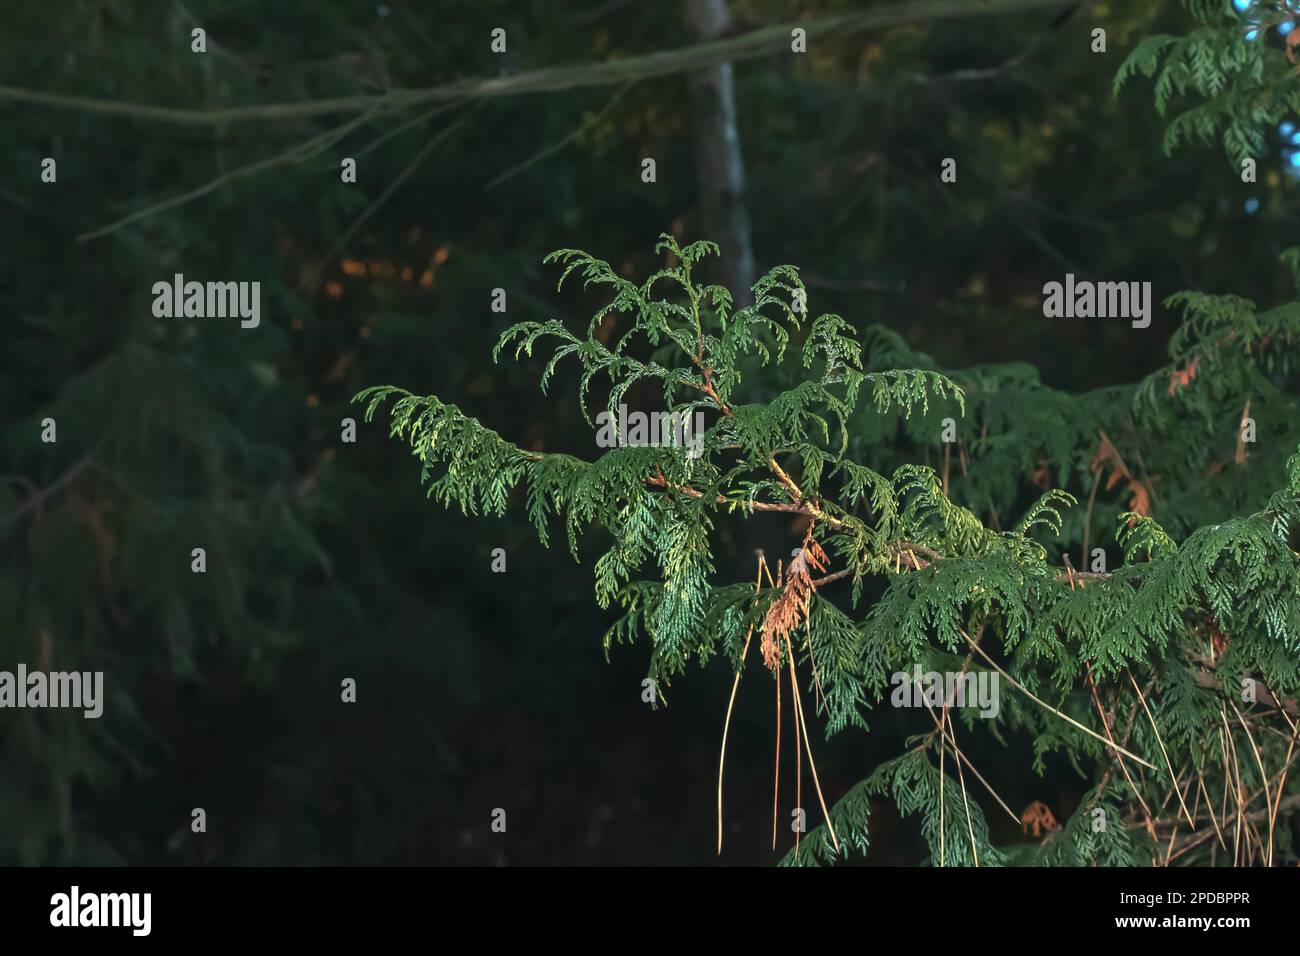 Nahaufnahme eines Astes der Zypresse Chamaecyparis pisifera in einer Hecke im Wintergarten. Stockfoto